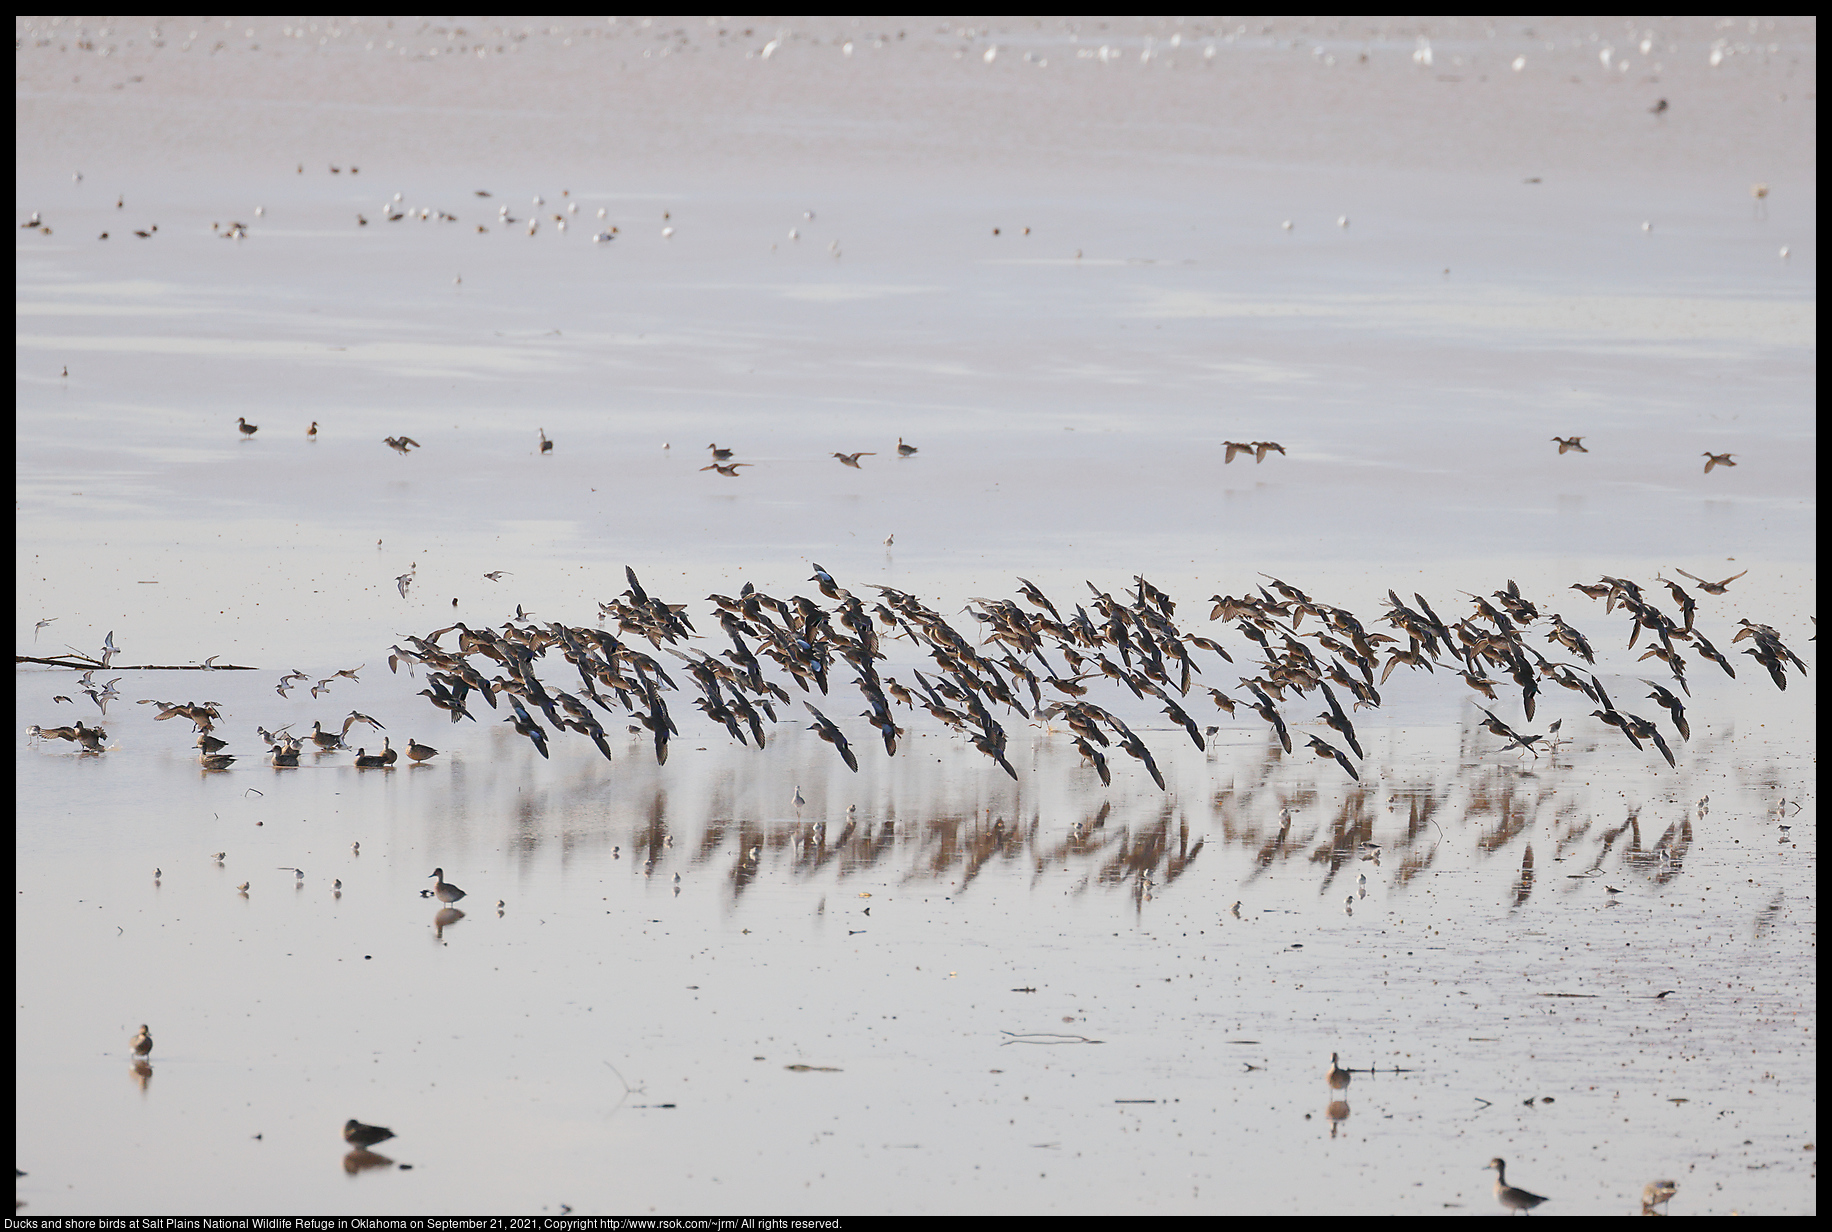 Ducks and shore birds at Salt Plains National Wildlife Refuge in Oklahoma on September 21, 2021